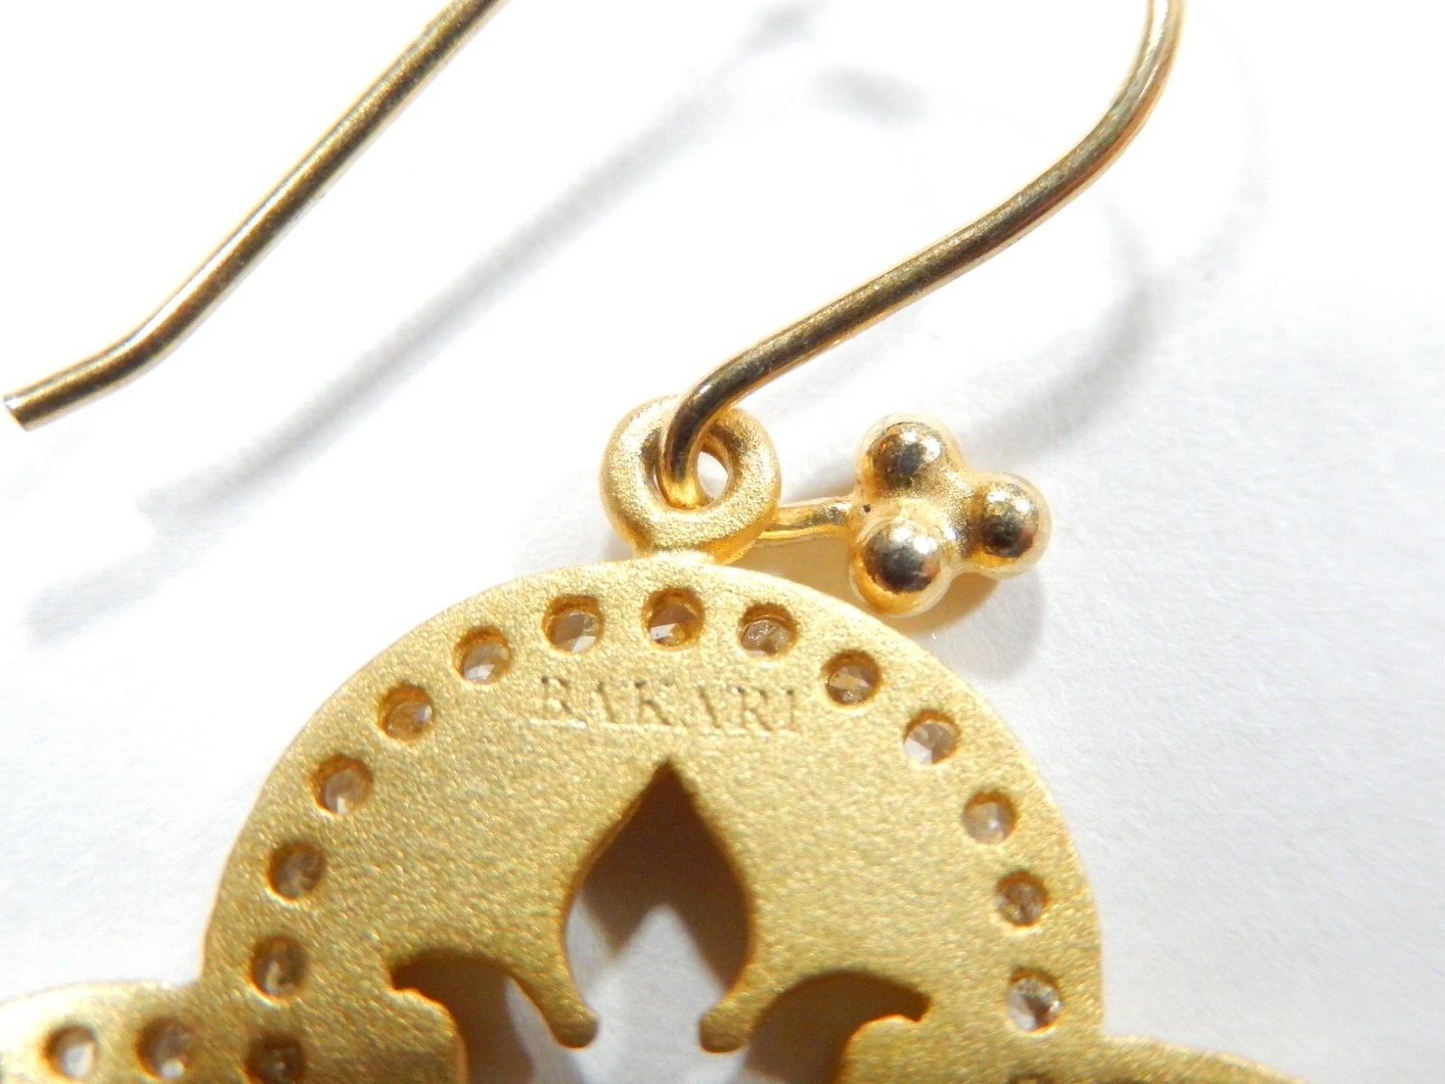 Gorgeous BAKARI Satin Gold Crystal Earrings - Retired - Never Worn New